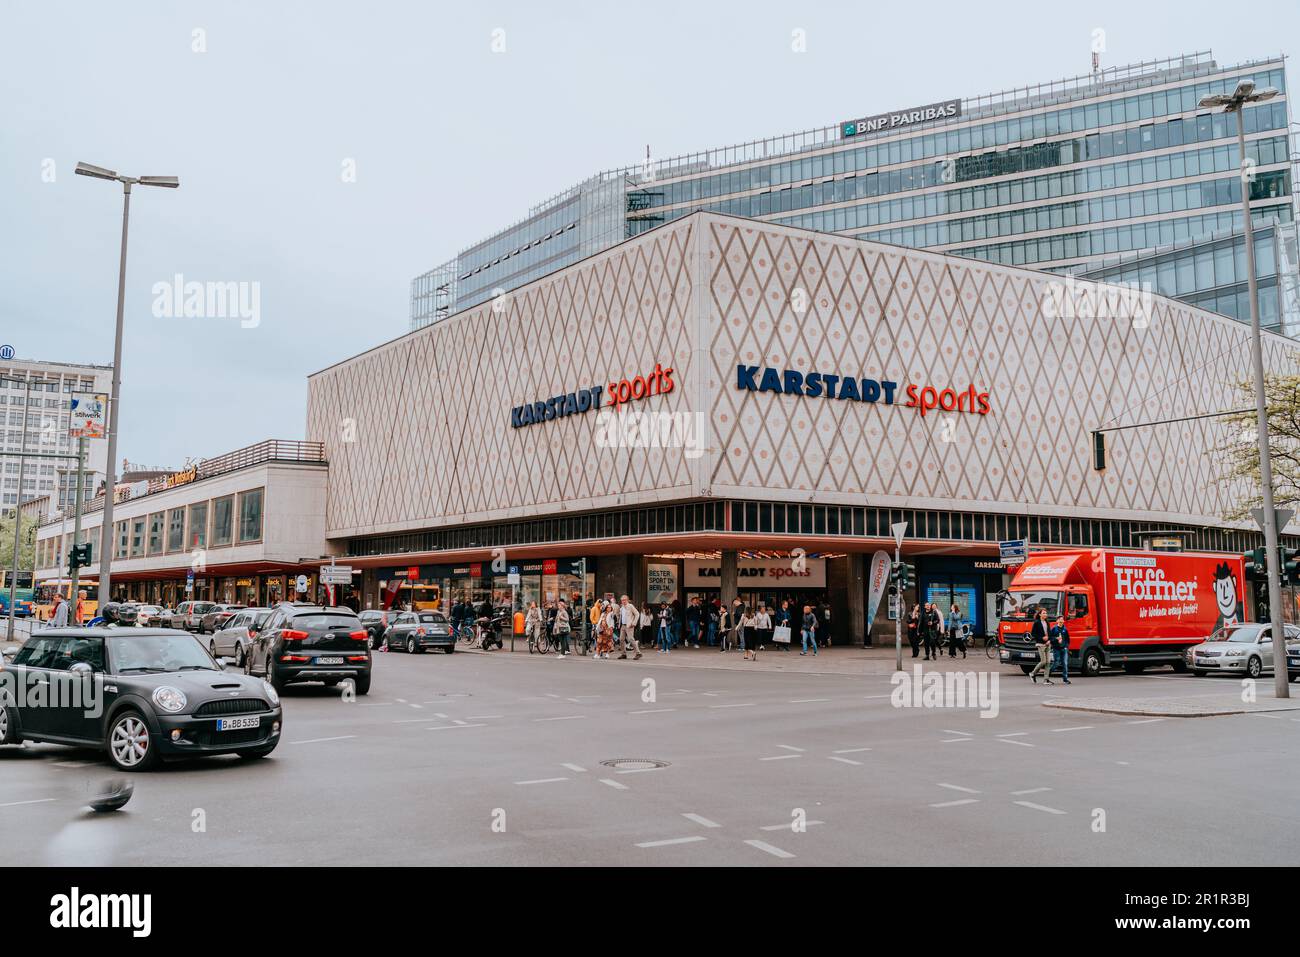 Fotografia che mostra la facciata del negozio Karstadt Sports, un famoso rivenditore di articoli sportivi, situato nel cuore di Berlino Foto Stock